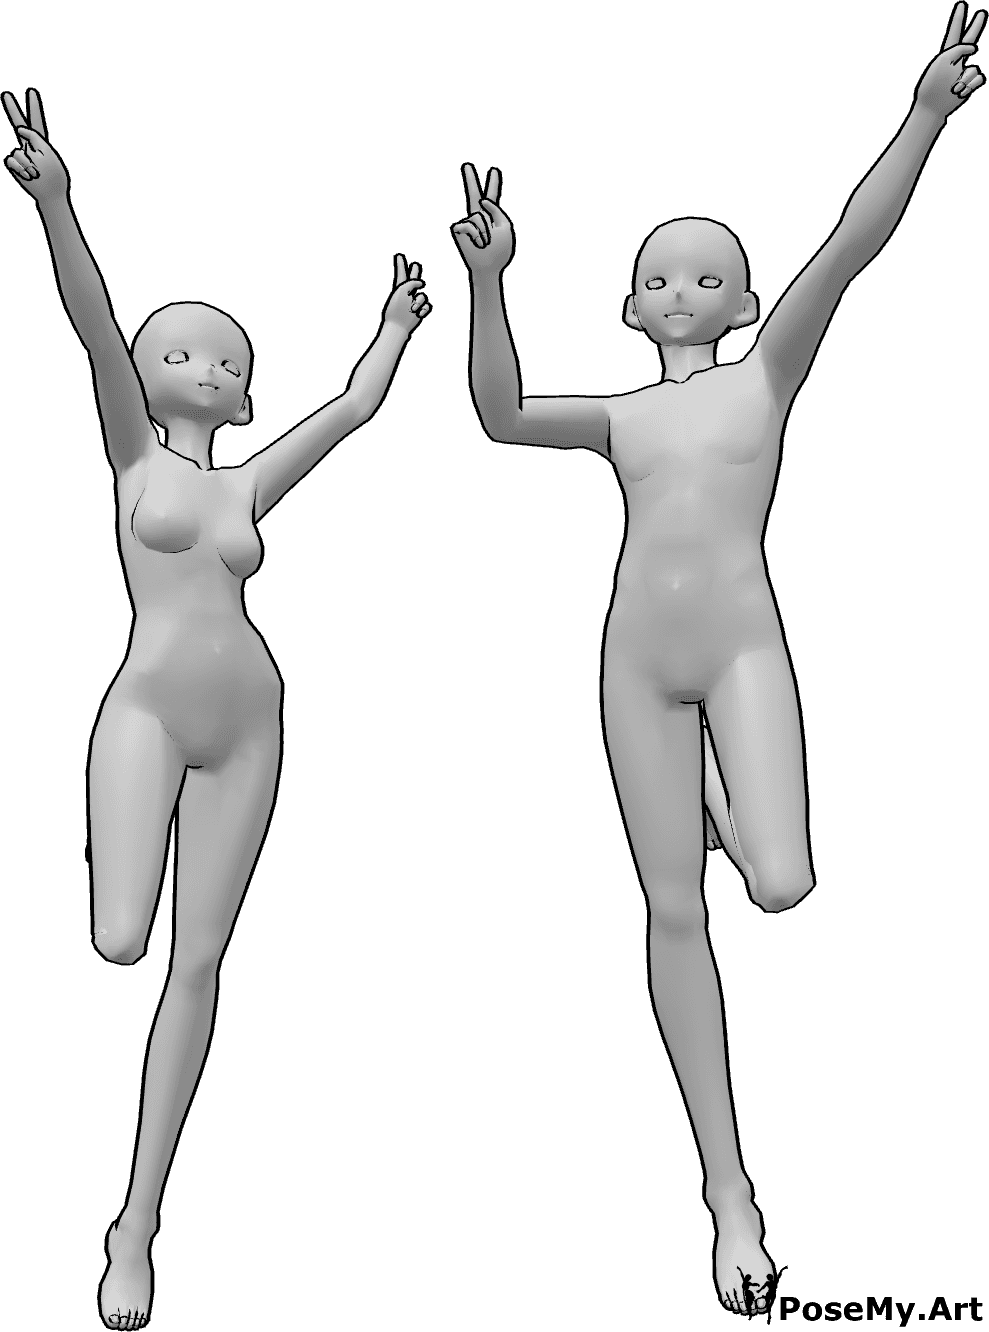 Référence des poses- Anime jumping peace pose - Une femme et un homme de l'animation sautent et font le signe de la paix avec leurs deux mains.